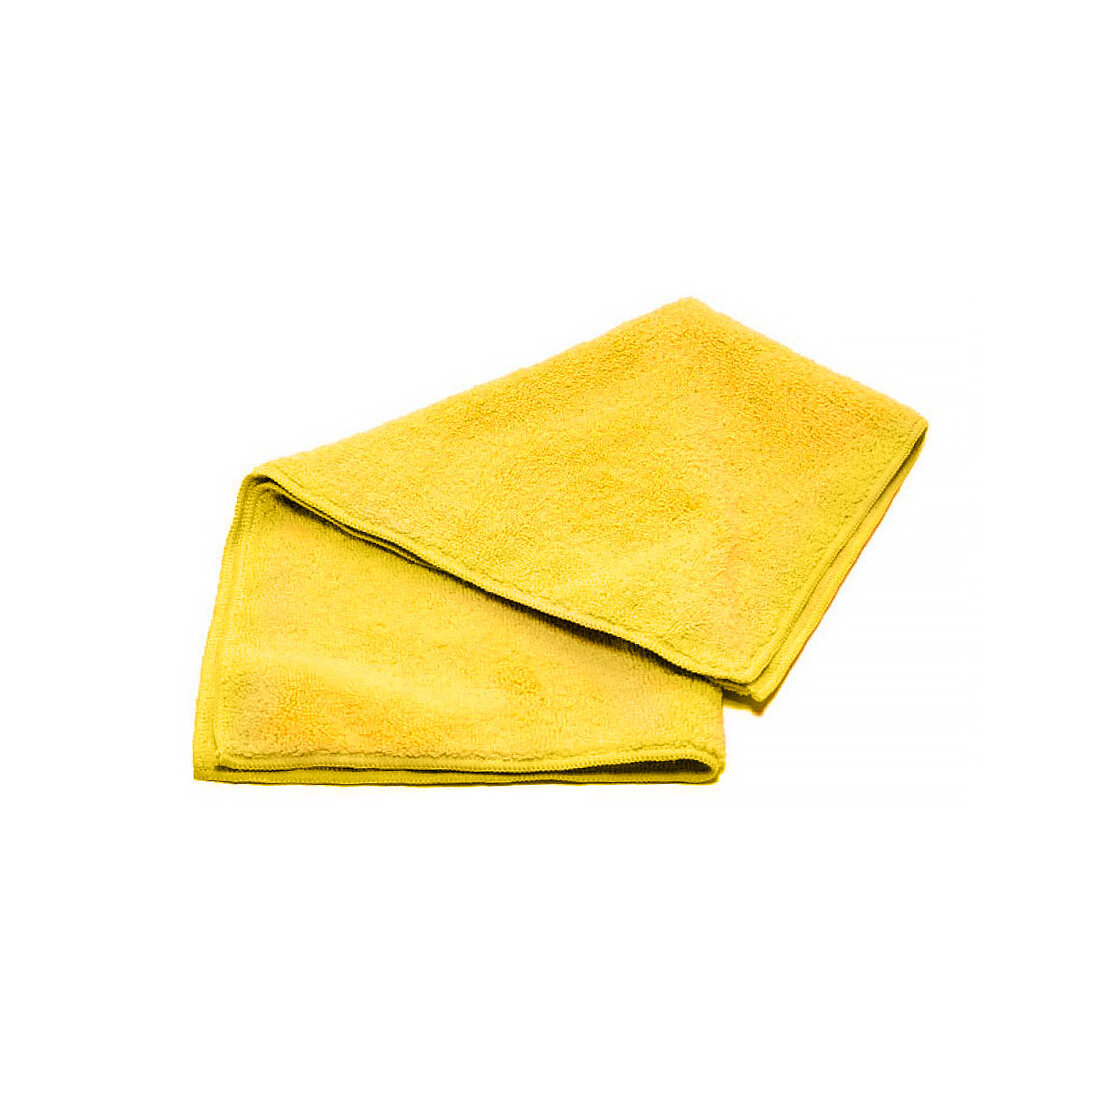 Мягкая салфетка из микрофибры для уборки и автомобиля желтая плотность 320 г./м2. размер 40 * 40 см.